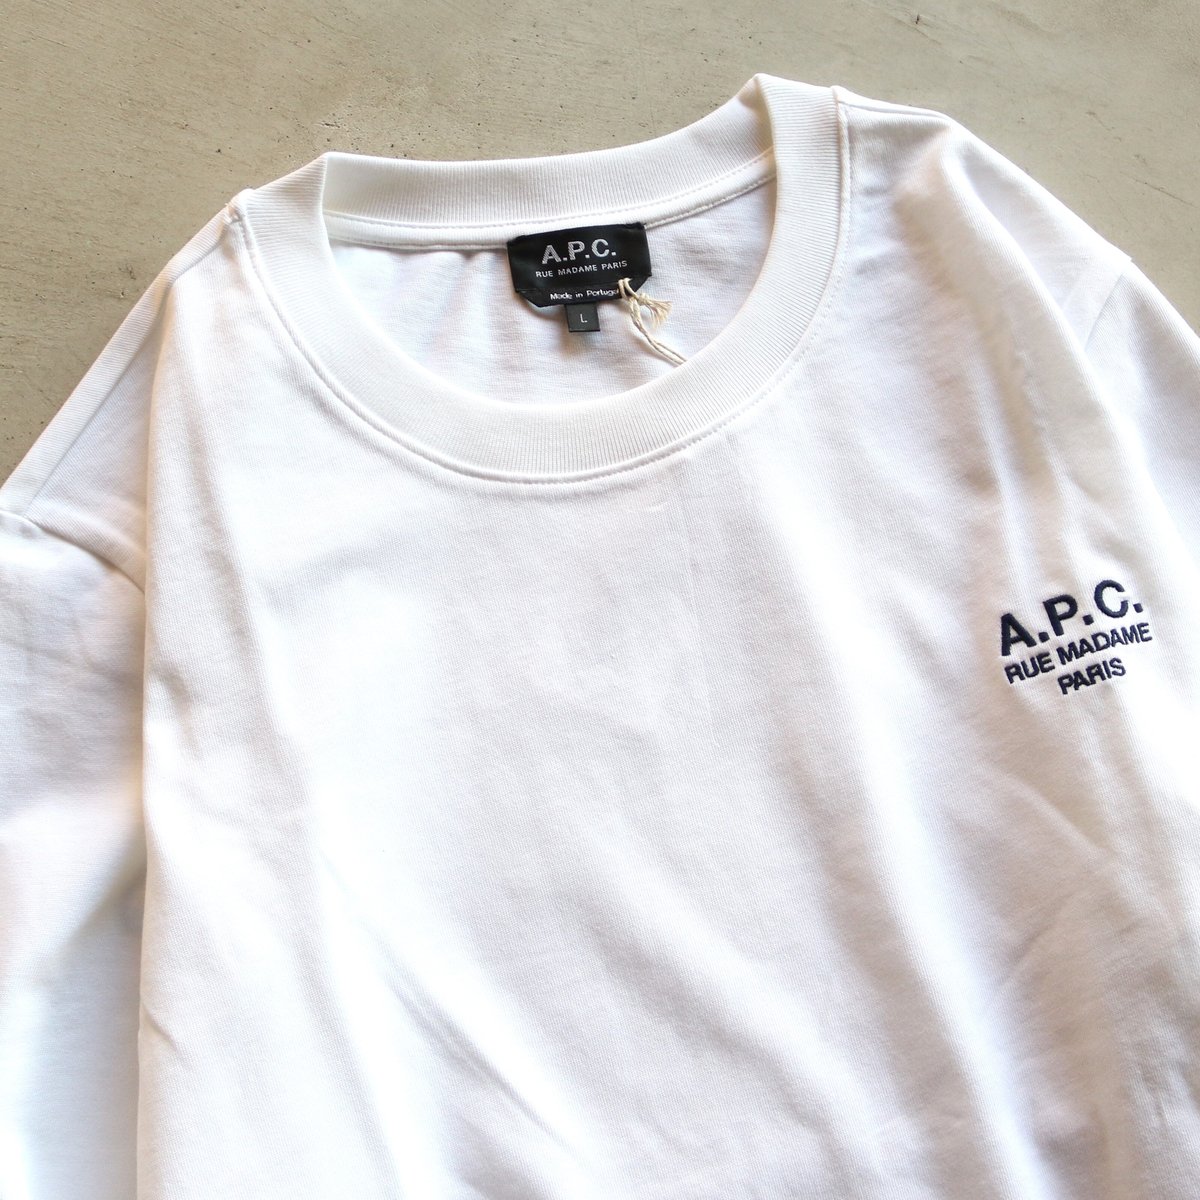 アウトレット価格比較 A.P.C. RUE MADAME 長袖シャツ XL 刺繍ロゴ